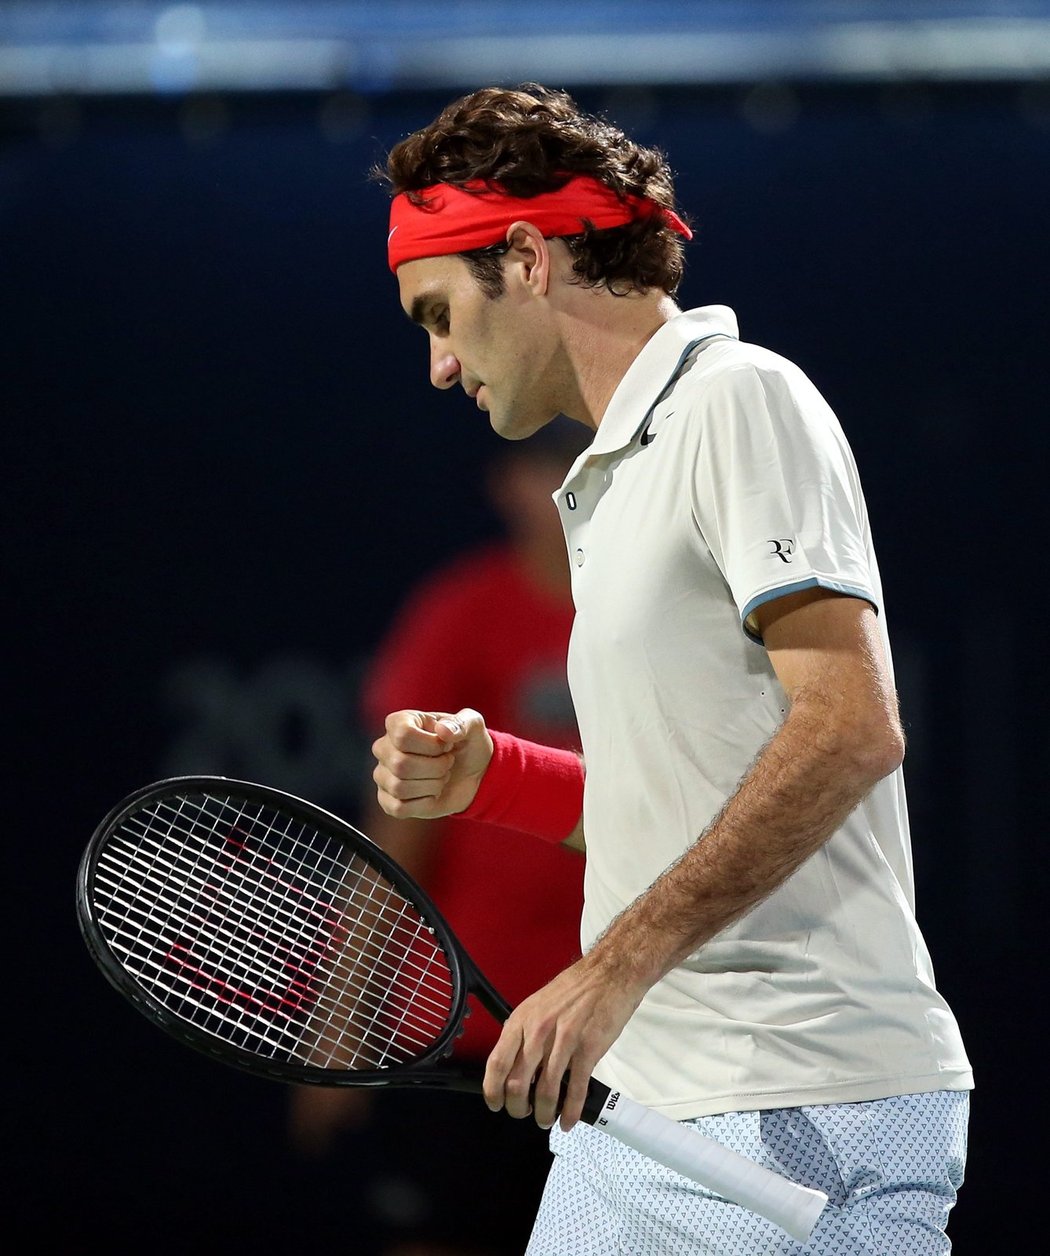 Roger Federer se nestačil divit, jaký odpor mu Radek Štěpánek ve druhém kole turnaje v Dubaji kladl